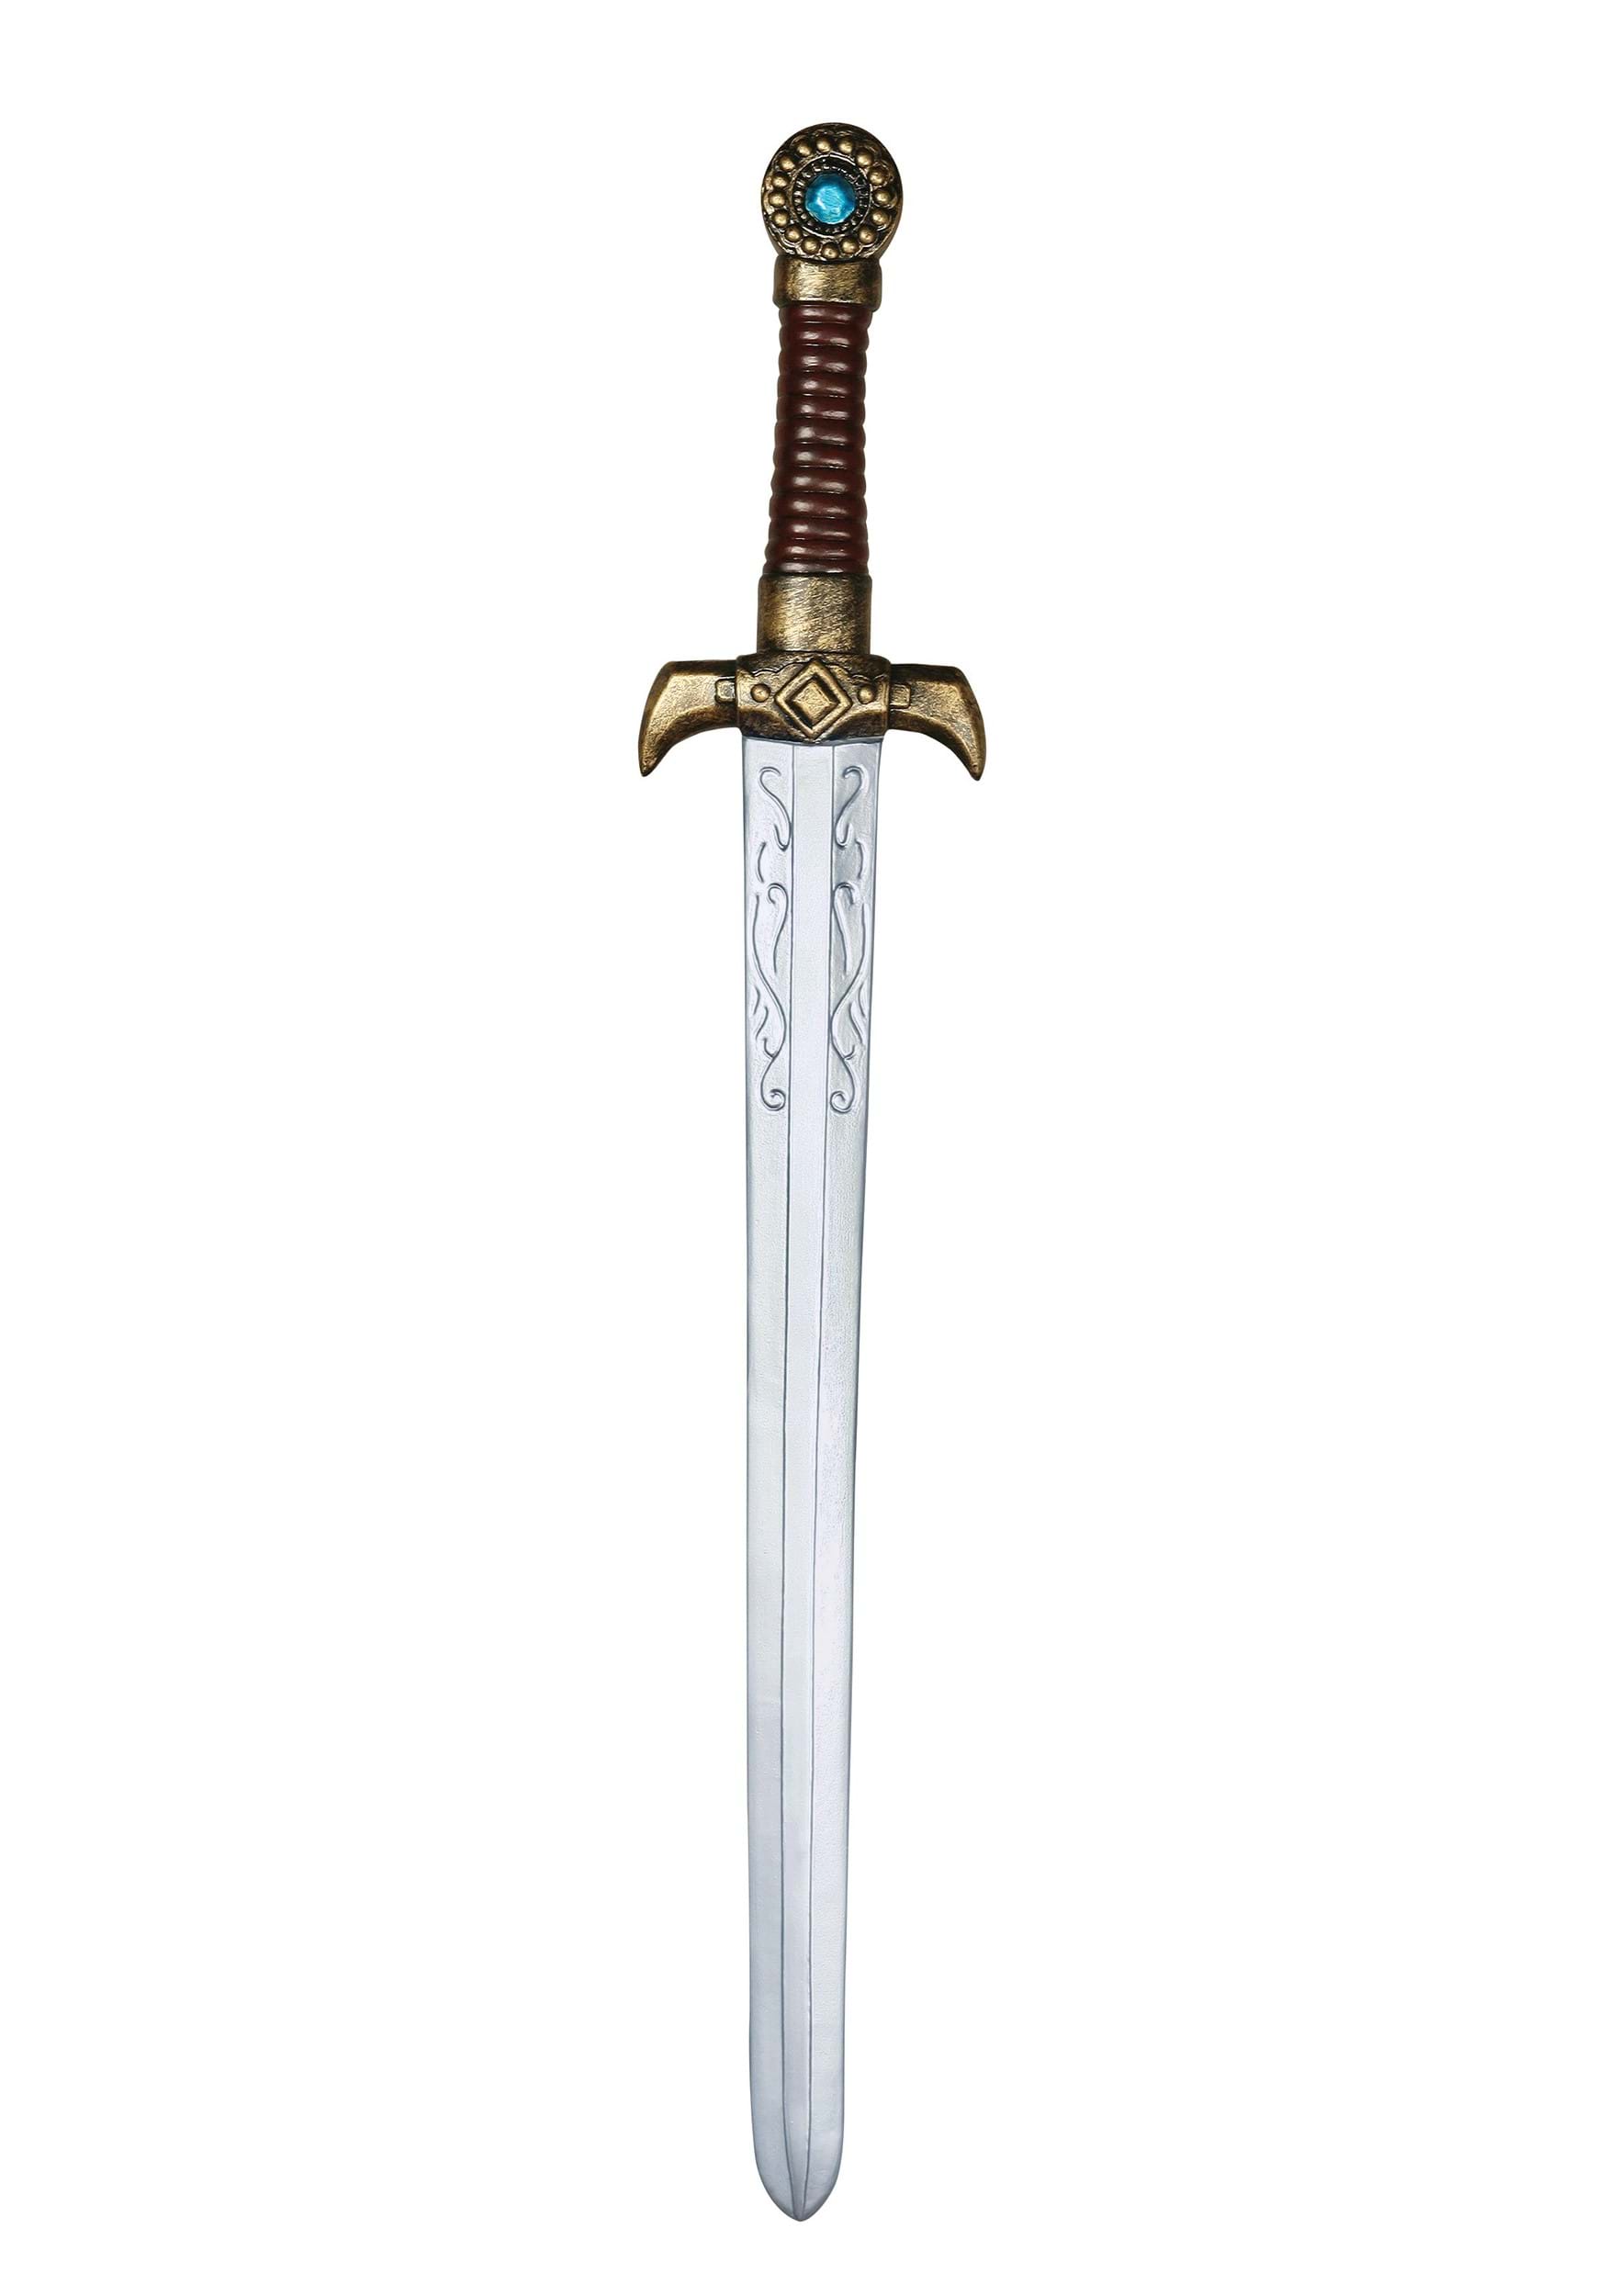 Standard Sword for Battle